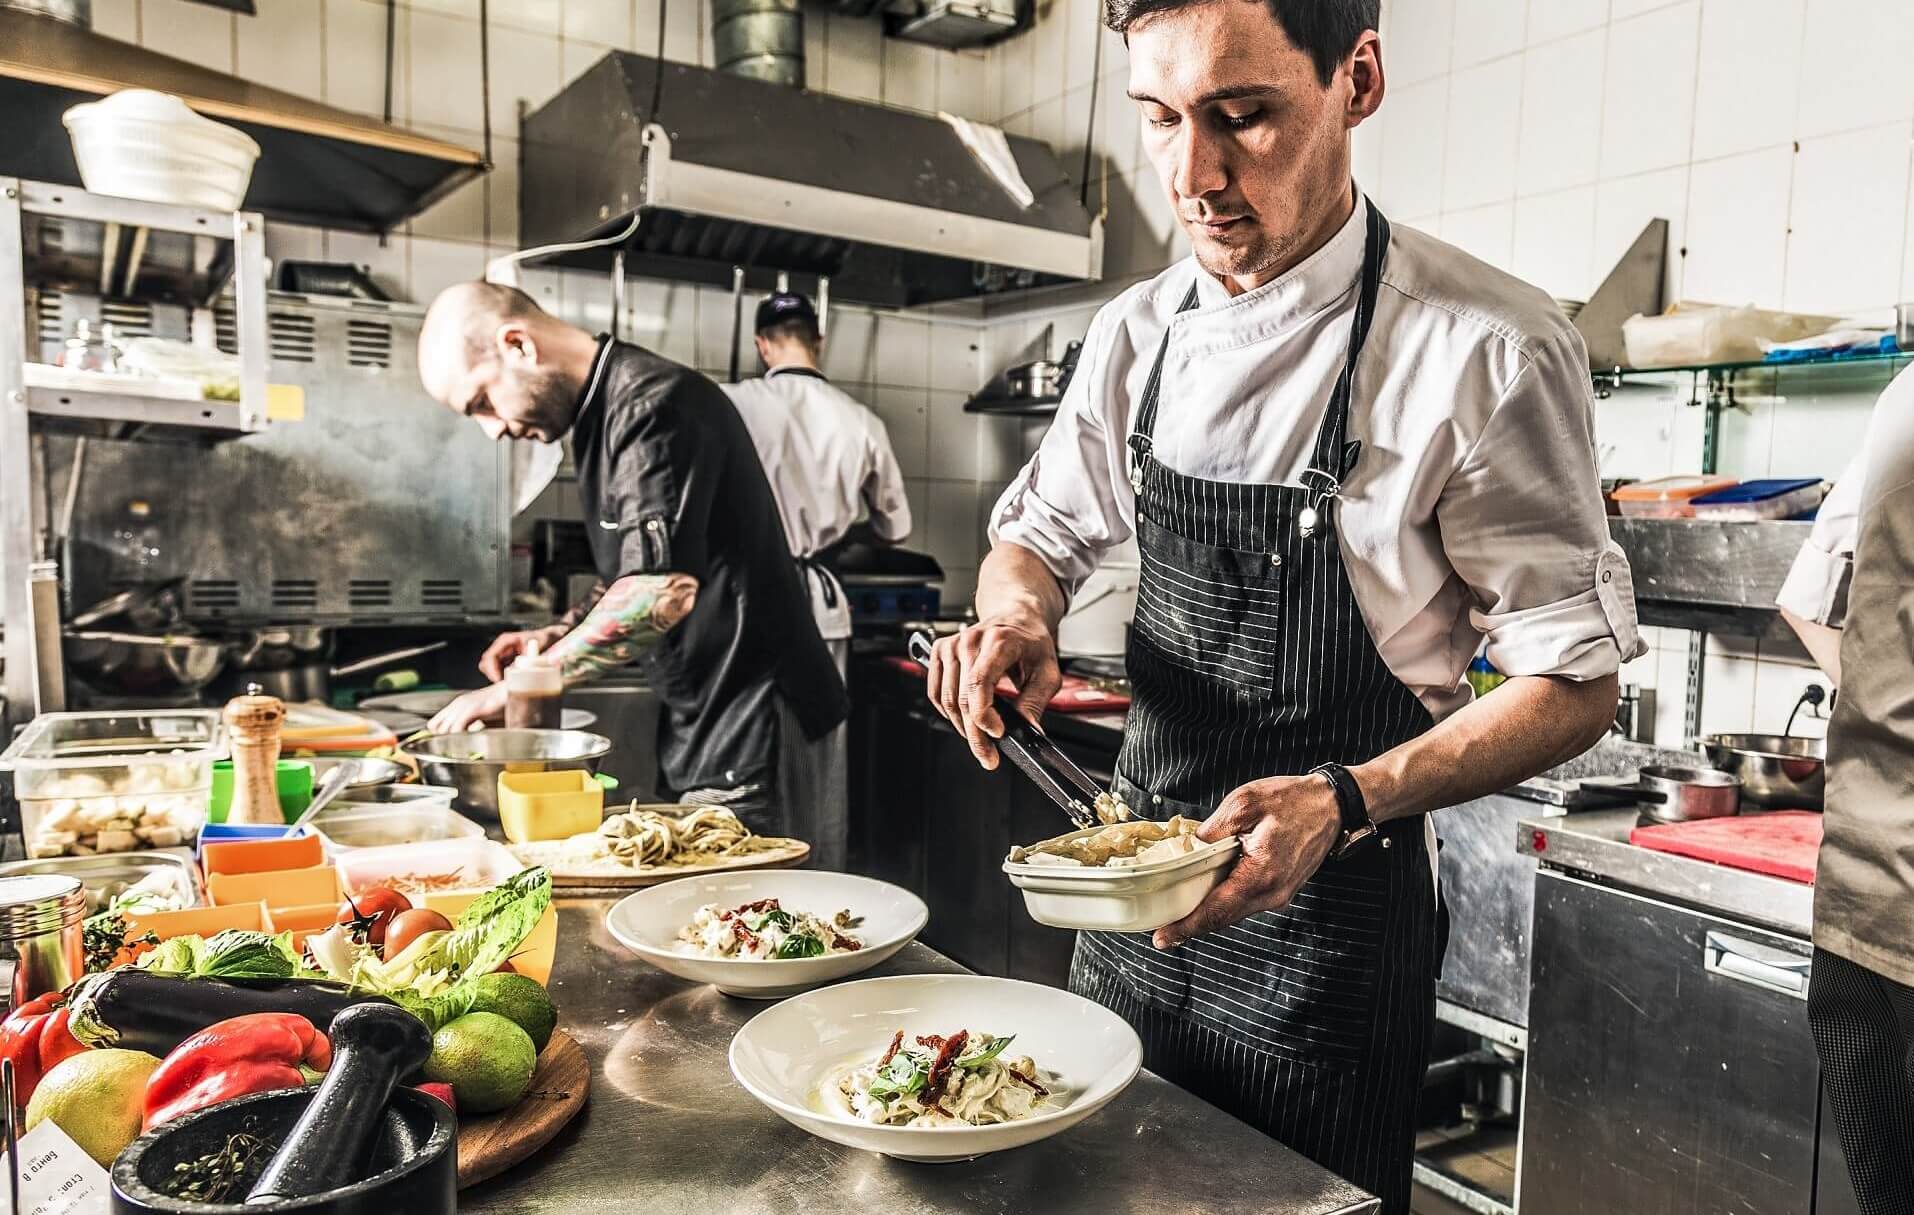 Lange Tage sind in der Gastronomie keine Seltenheit - die Work-Life-Balance wird dabei oft vernachlässigst